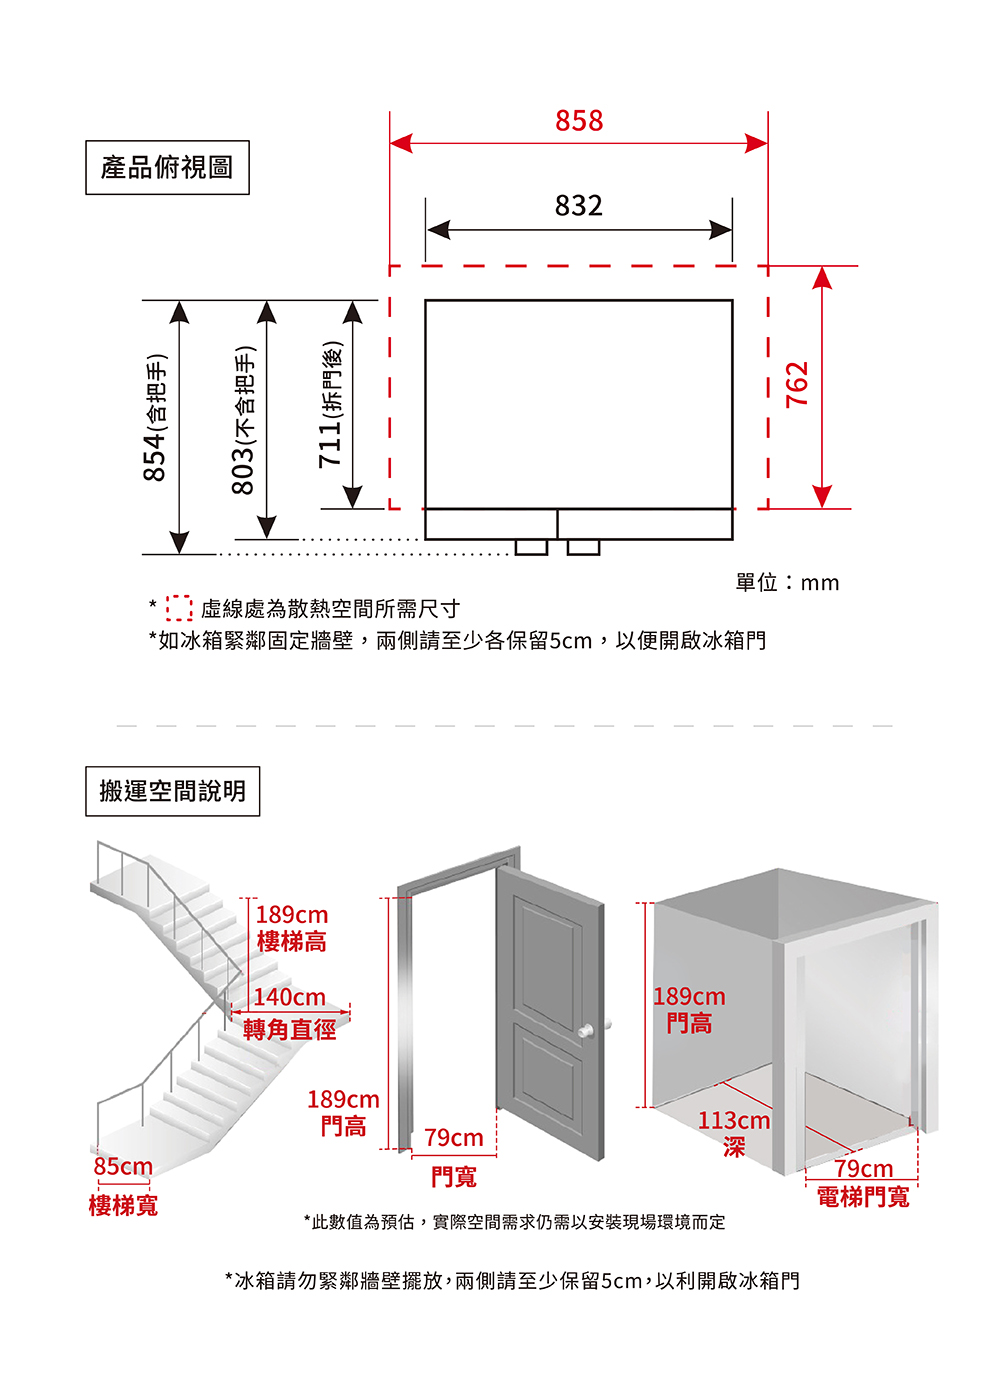 對開冰箱可視現場安裝評估是否需拆箱及拆除門片，搬運空間示意是以拆除門片後所需空間為例